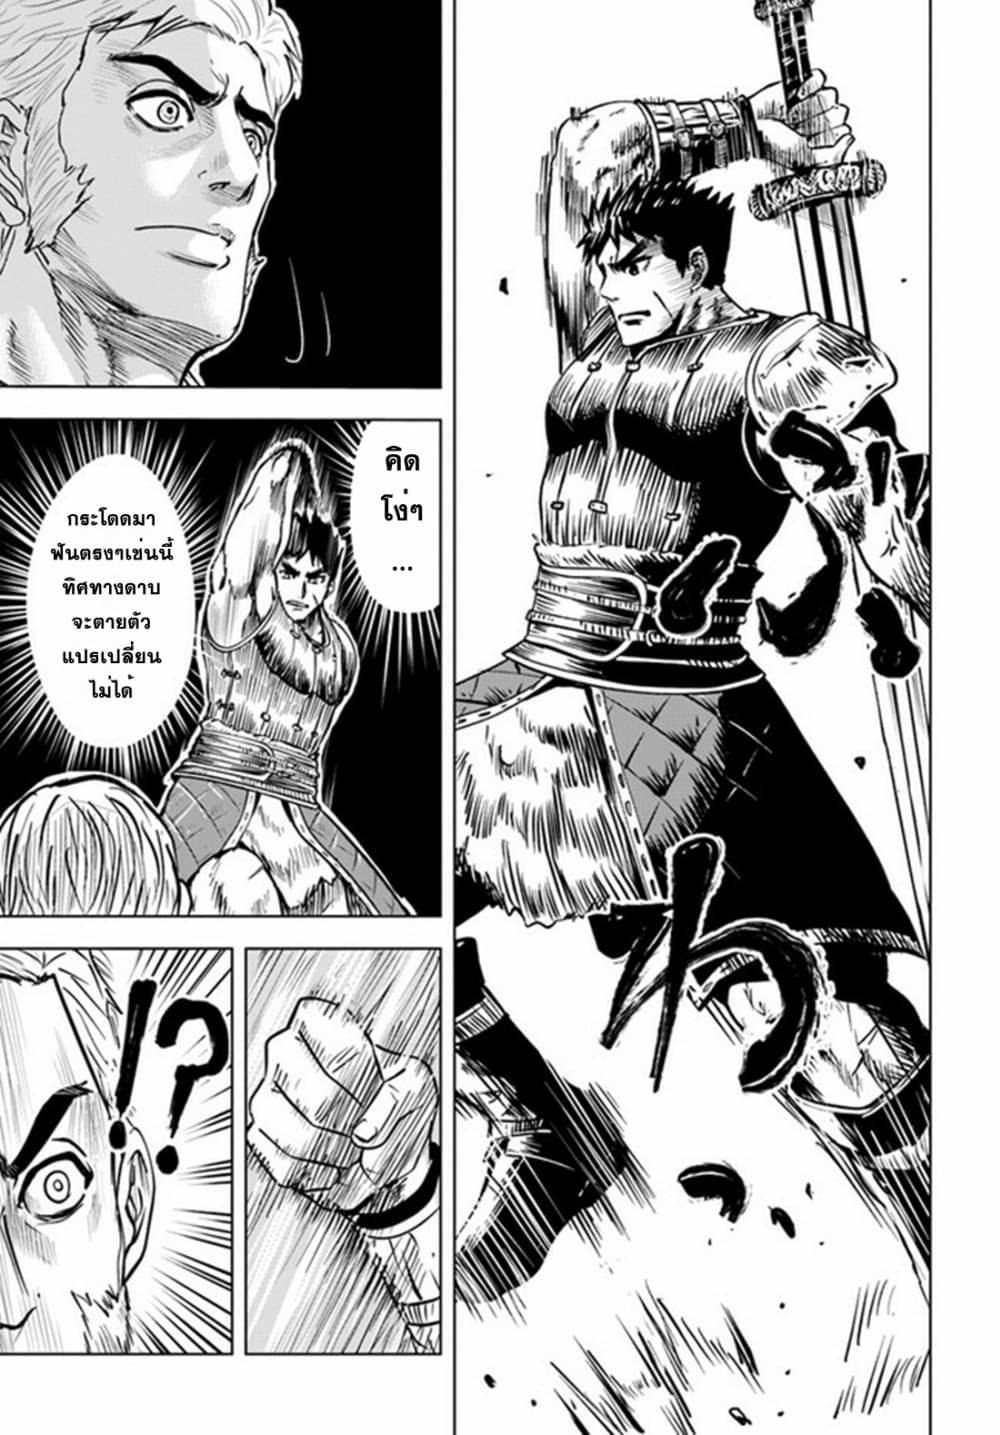 Oukoku e Tsuzuku Michi dorei Kenshi no Nariagari Eiyutan (Haaremu Raifu) - Road to the Kingdom Slave Swordsman the Rise of Heroes - Harem Life 20-20